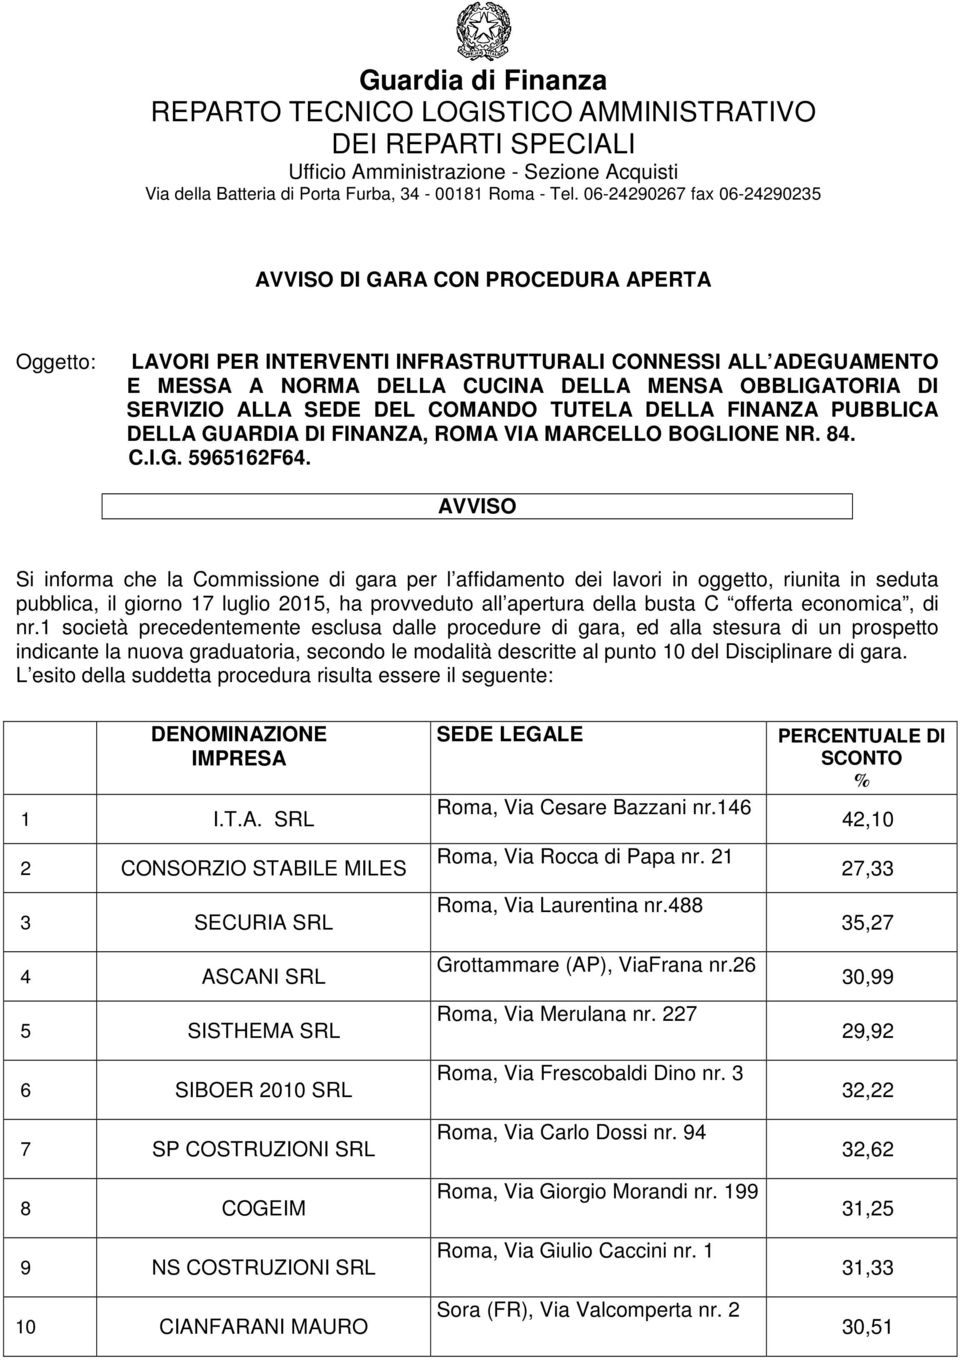 SERVIZIO ALLA SEDE DEL COMANDO TUTELA DELLA FINANZA PUBBLICA DELLA GUARDIA DI FINANZA, ROMA VIA MARCELLO BOGLIONE NR. 84. C.I.G. 5965162F64.